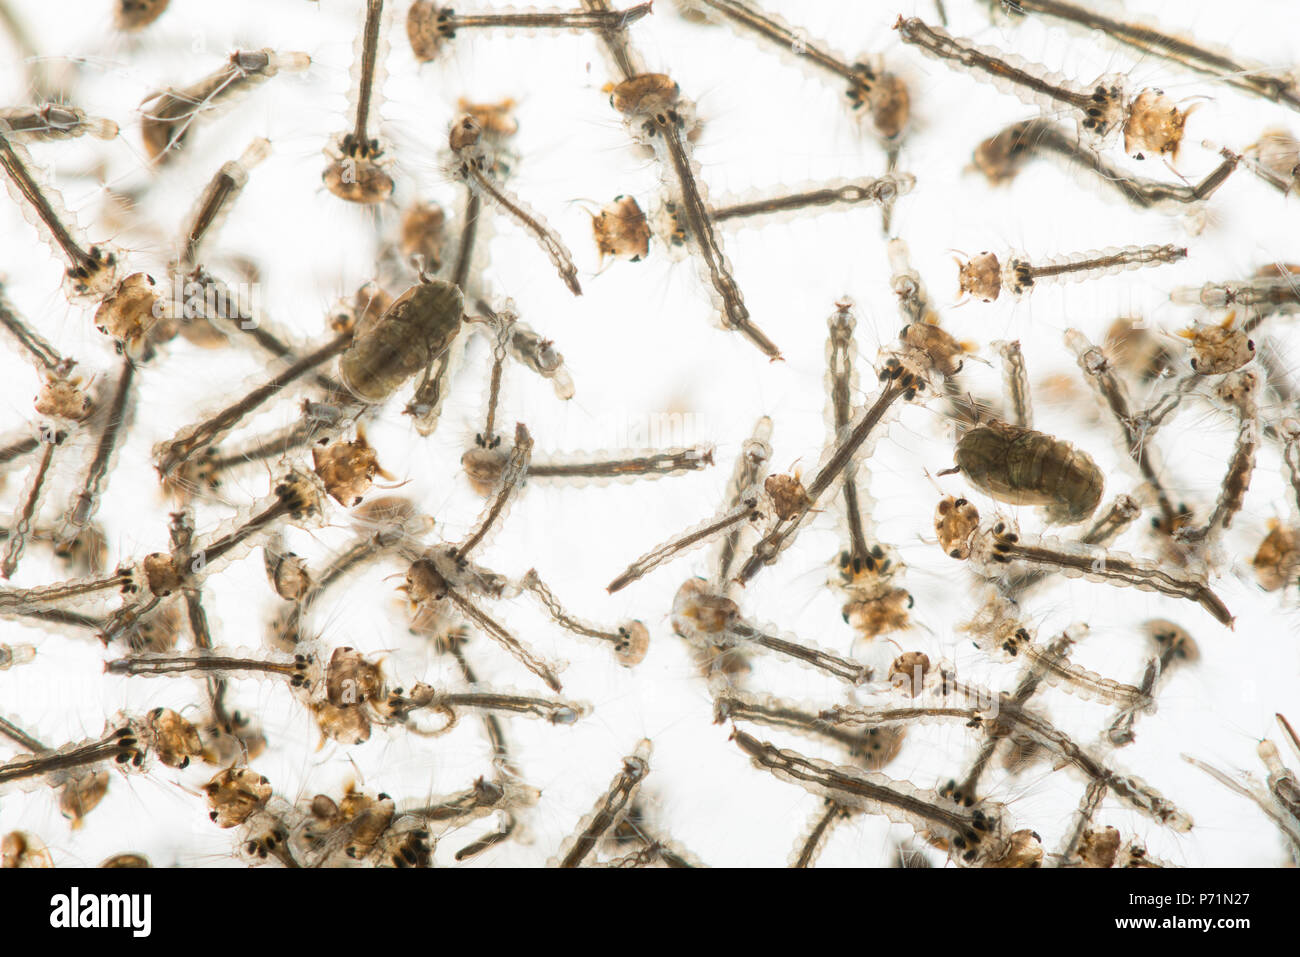 Les nymphes et les larves de moustiques Culicidés s'agiter dans l'eau d'étang claire des diverses étapes de développement montrant structure interne Banque D'Images